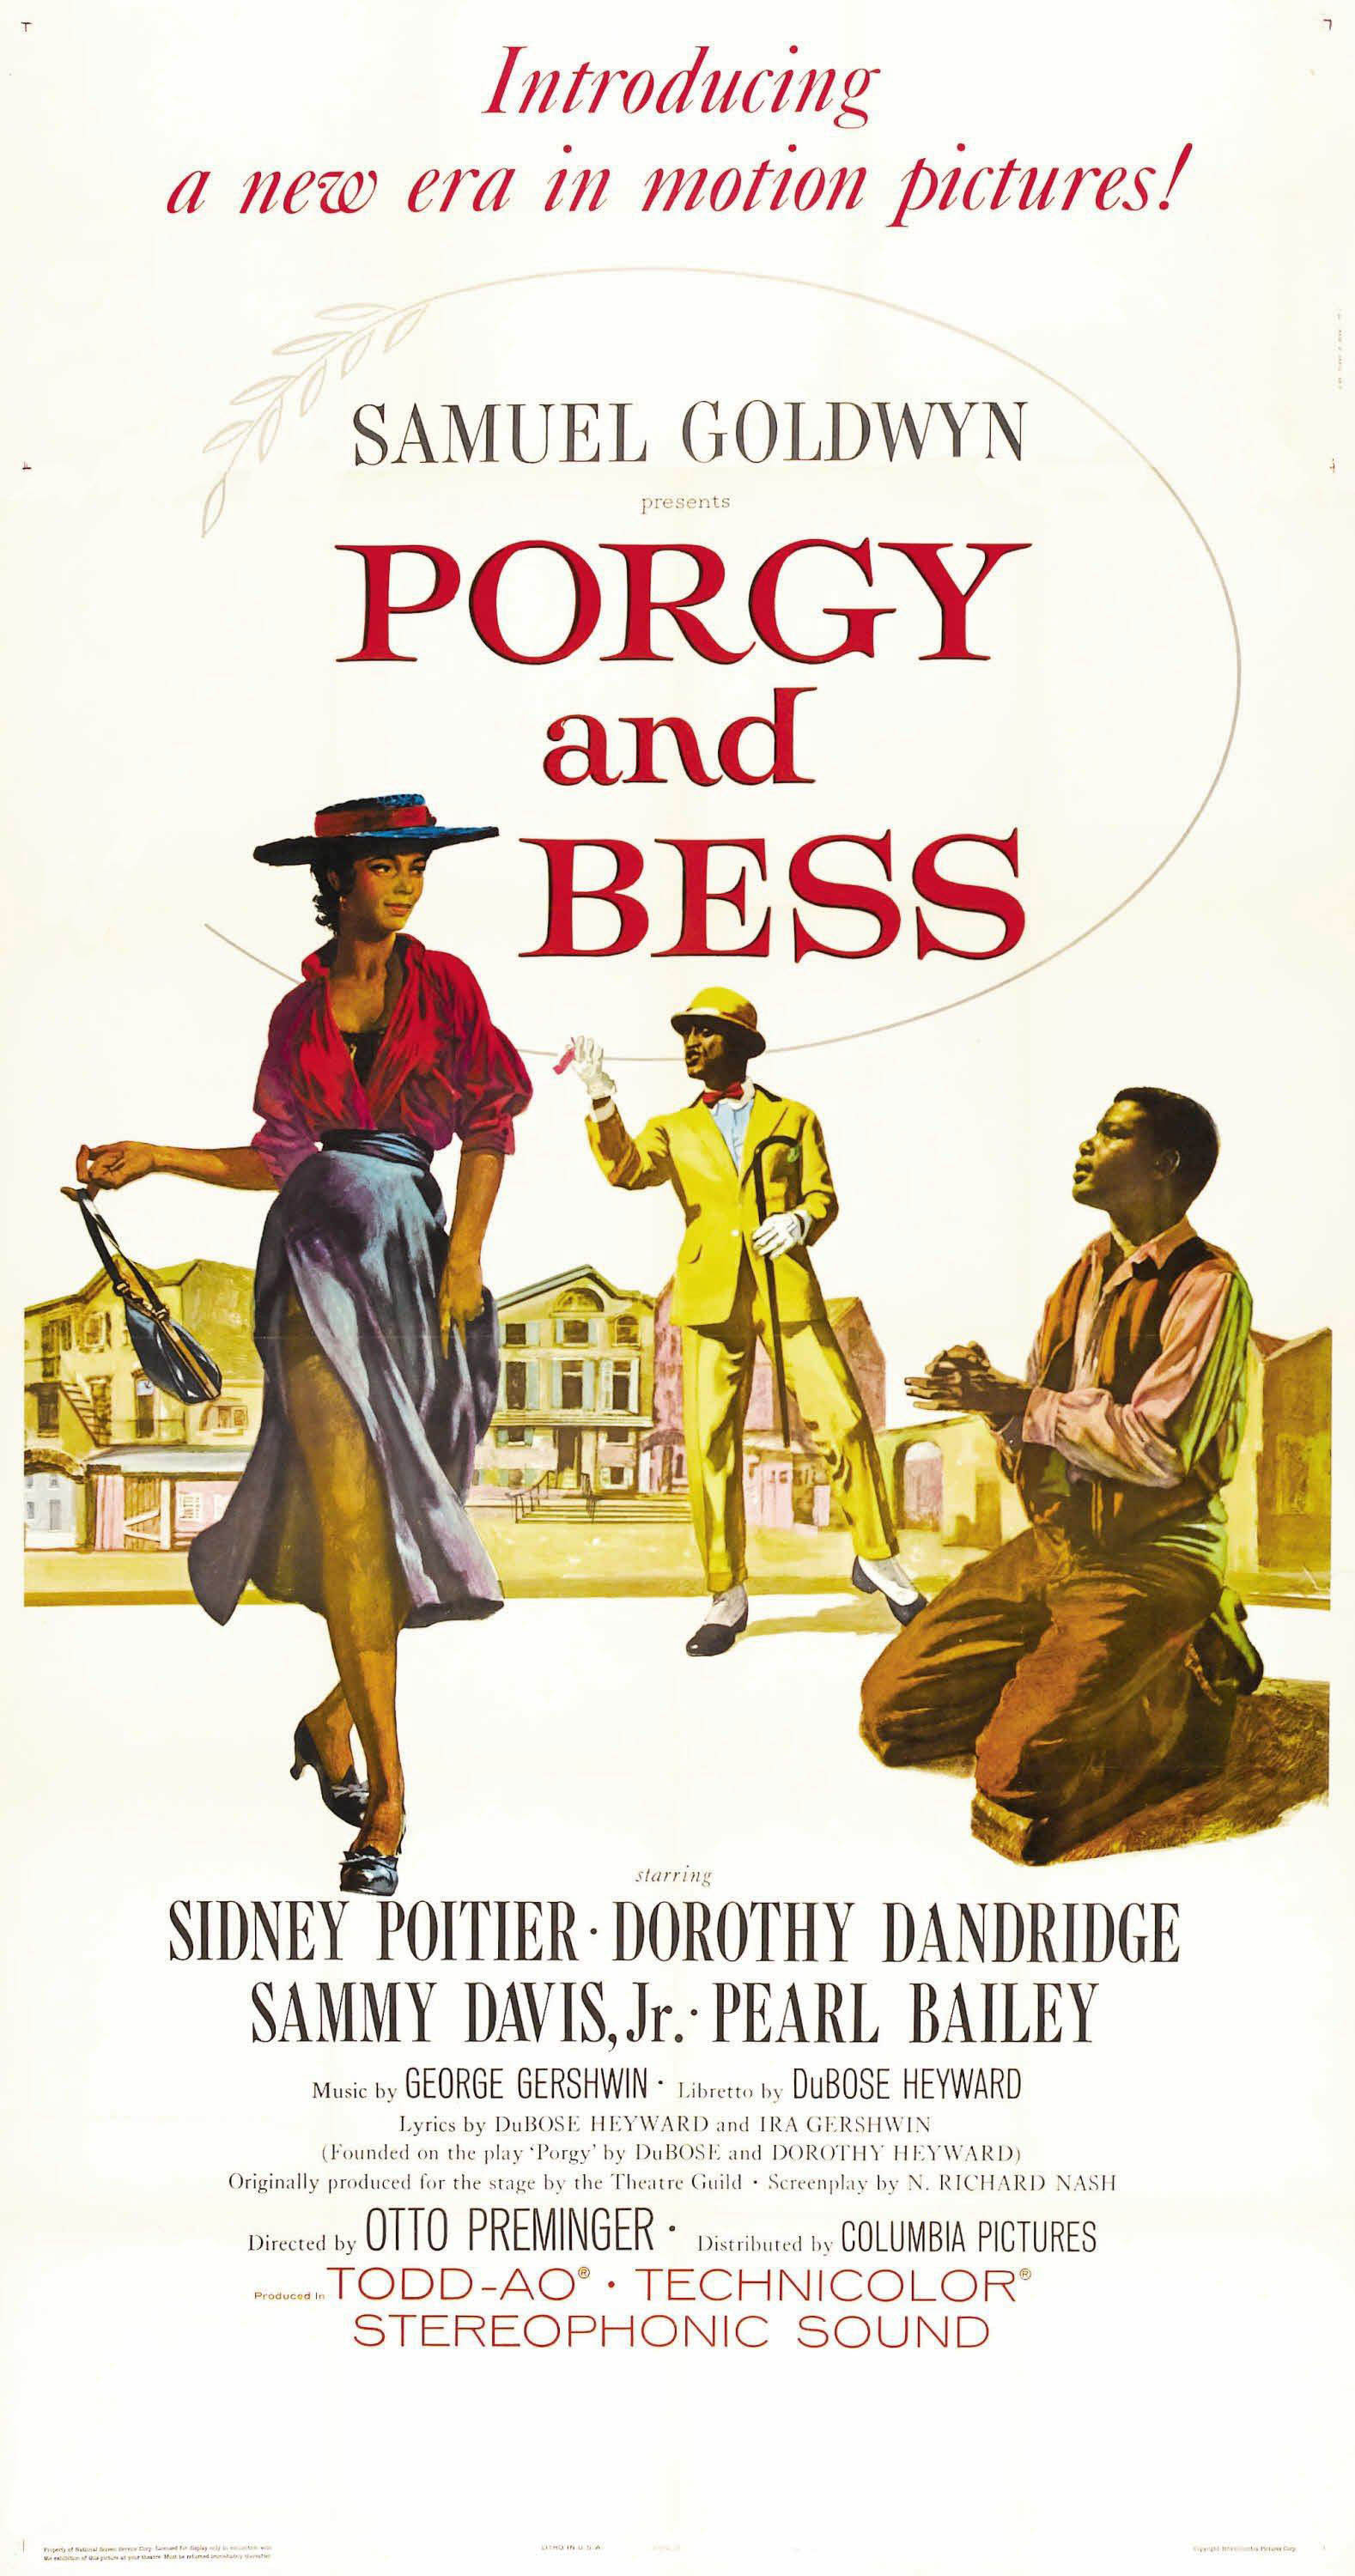 Cartel de la adaptación cinematográfica de 'Porgy and Bess' dirigida por Preminger / COLUMBIA PICTURES